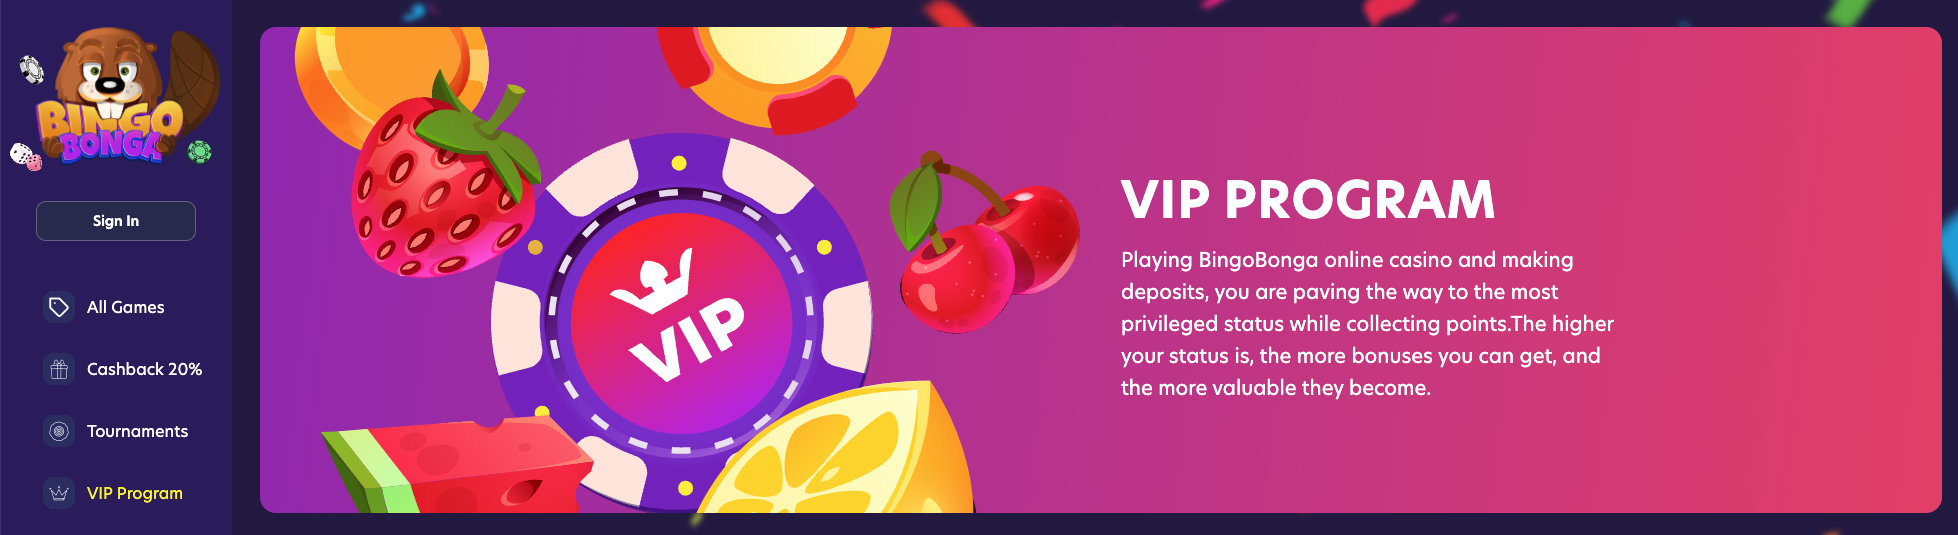 casinos zonder licentie - Bingobonga VIP experience